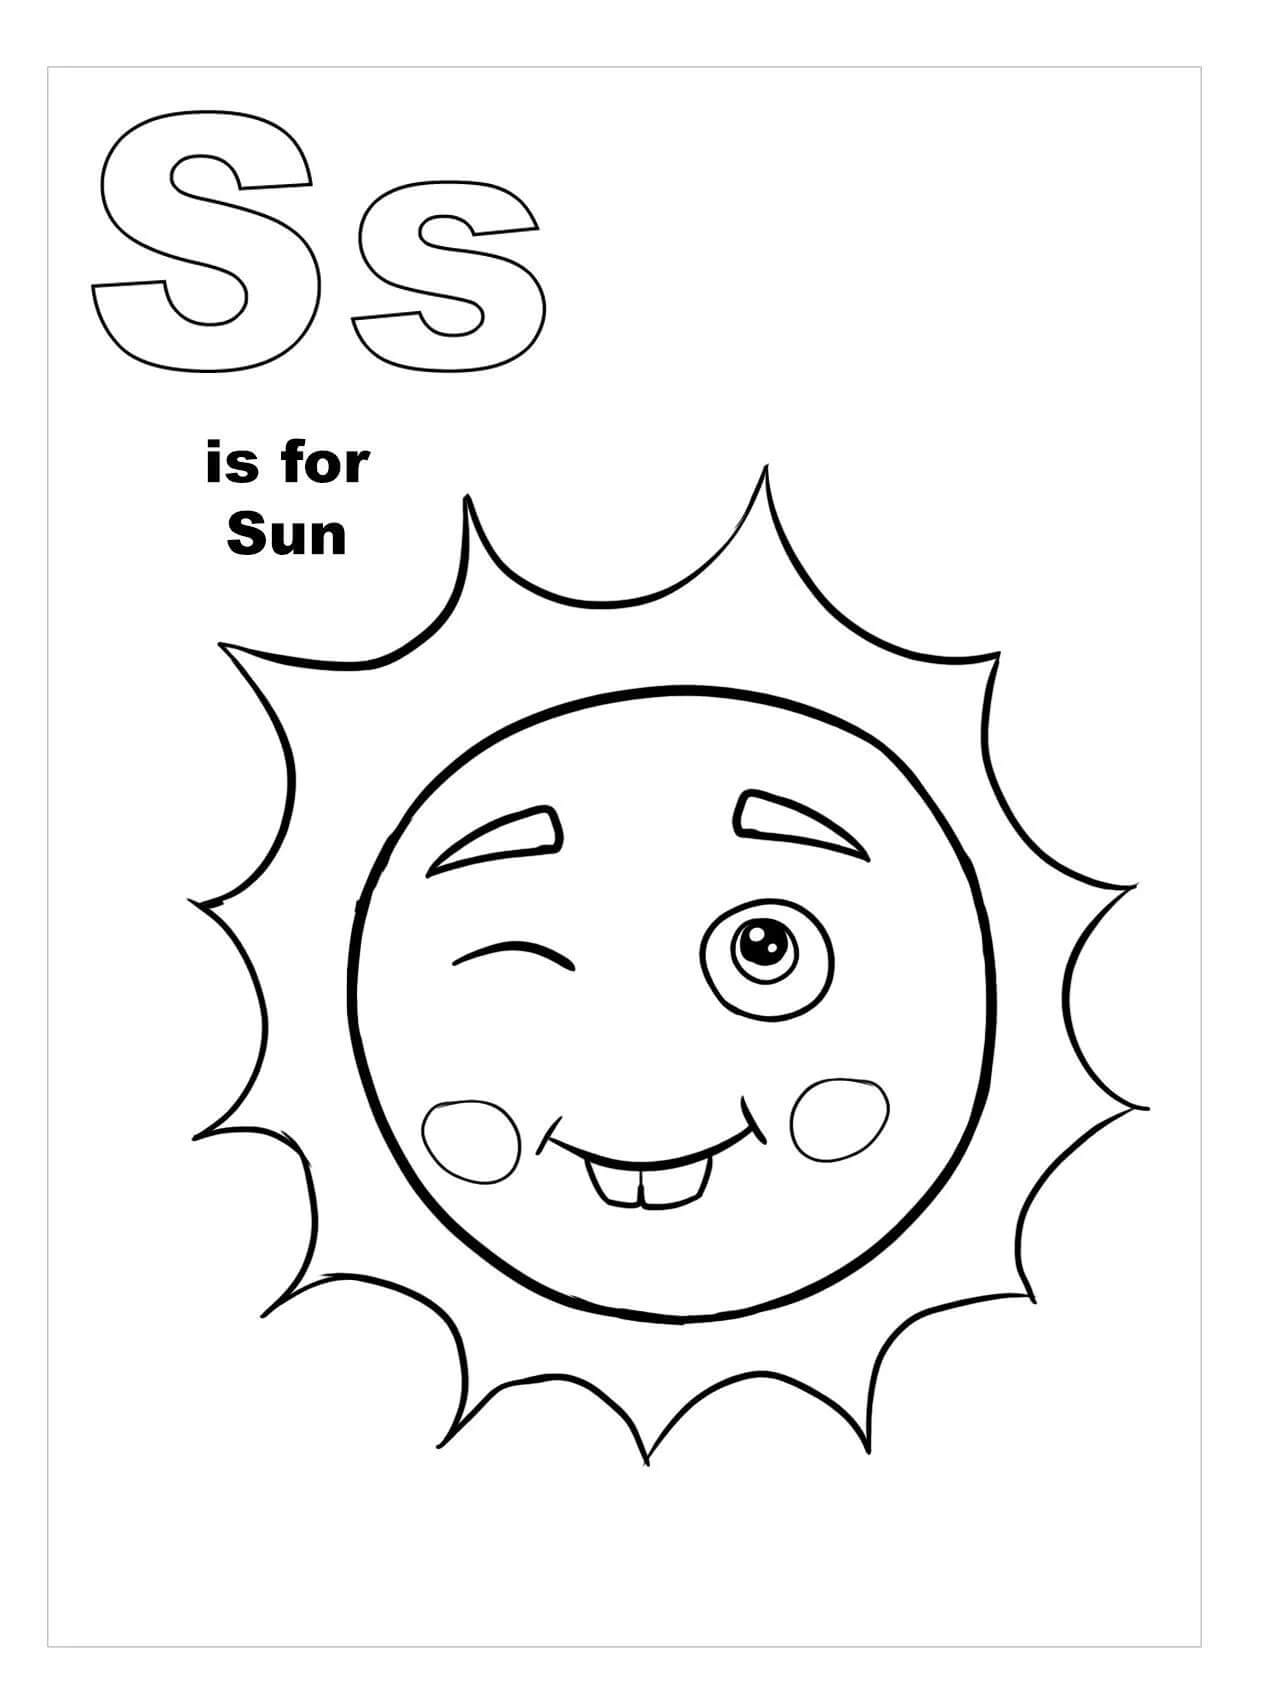 문자 S는 Sun을 의미합니다.